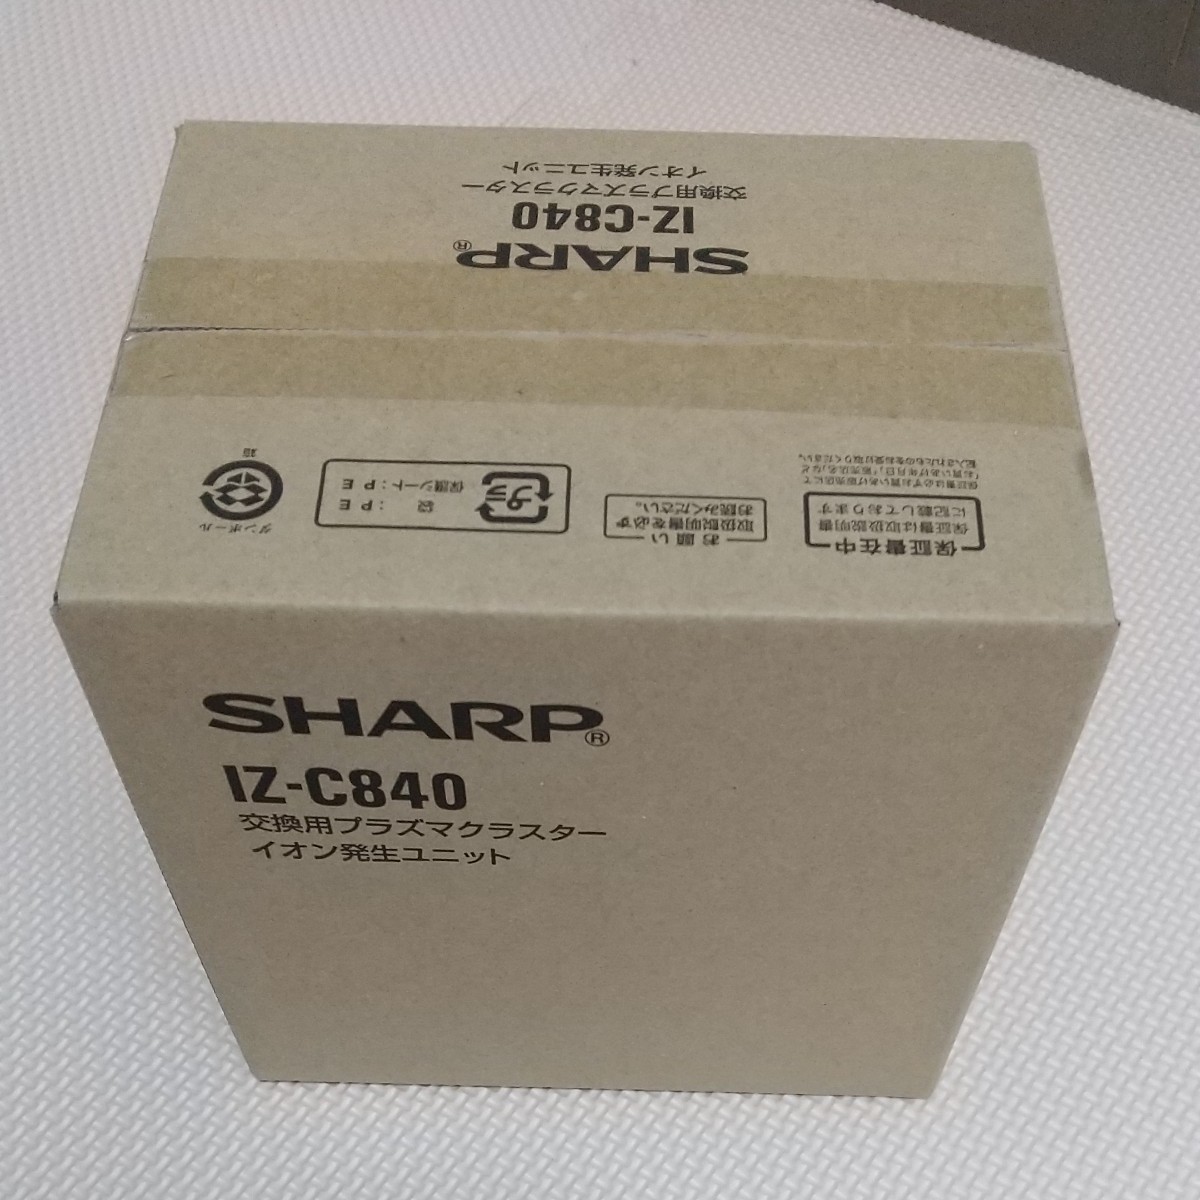 シャープ SHARP IZ-C840 交換用プラズマクラスターイオン発生ユニット